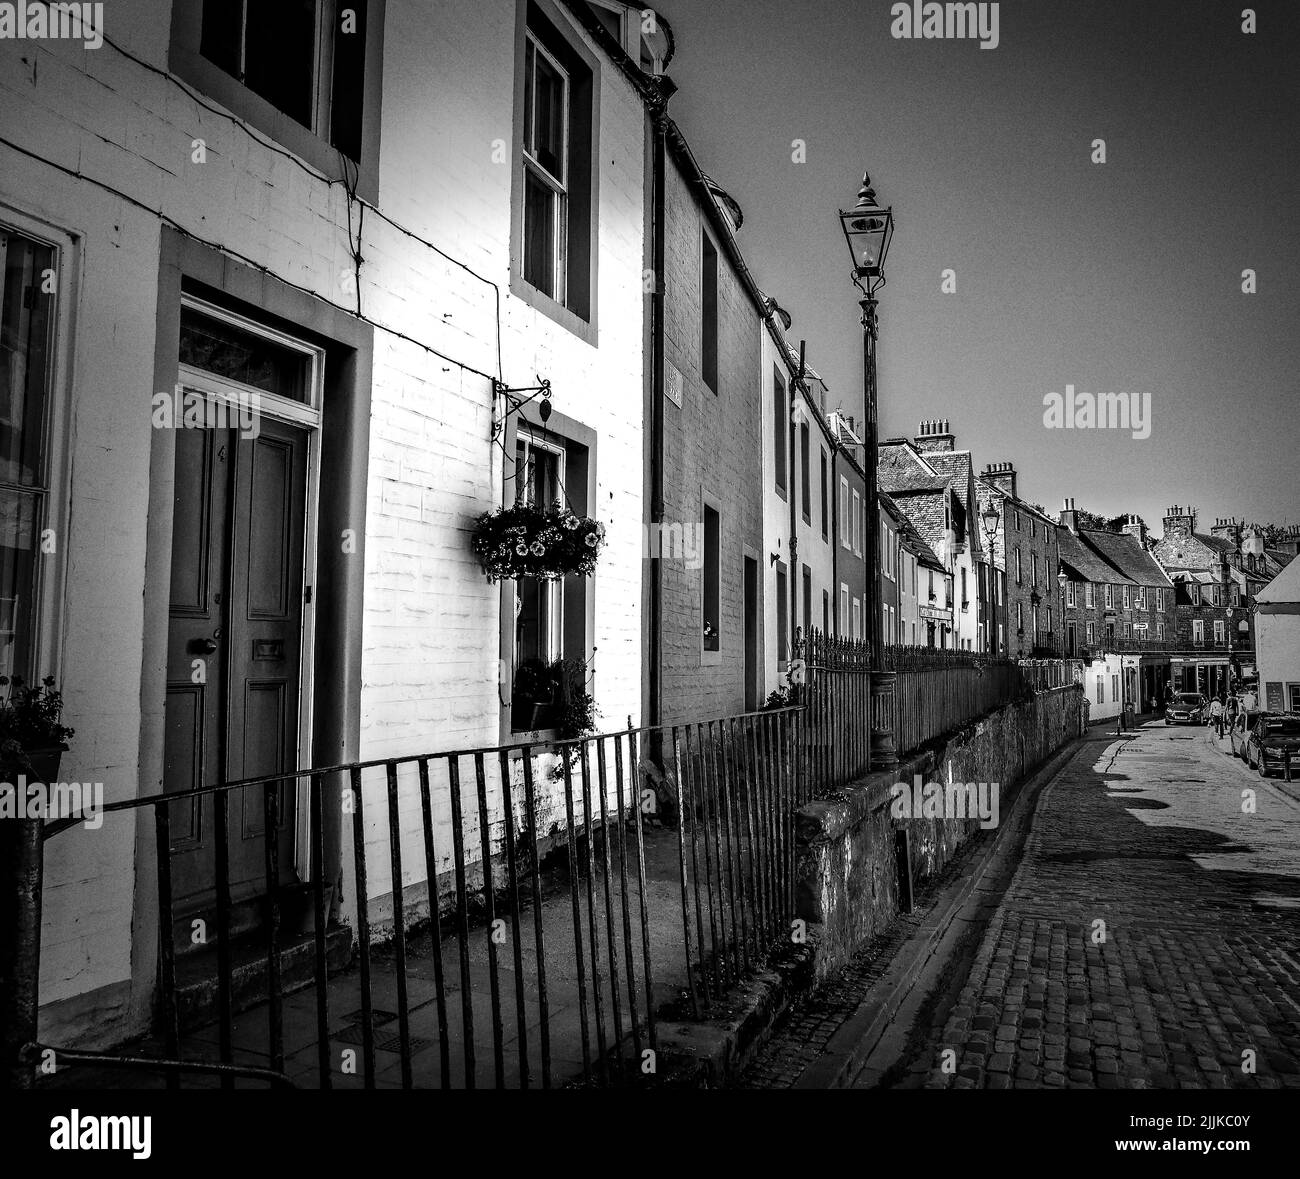 Une photo en niveaux de gris de la ville d'Edimbourg, Ecosse, Royaume-Uni Banque D'Images